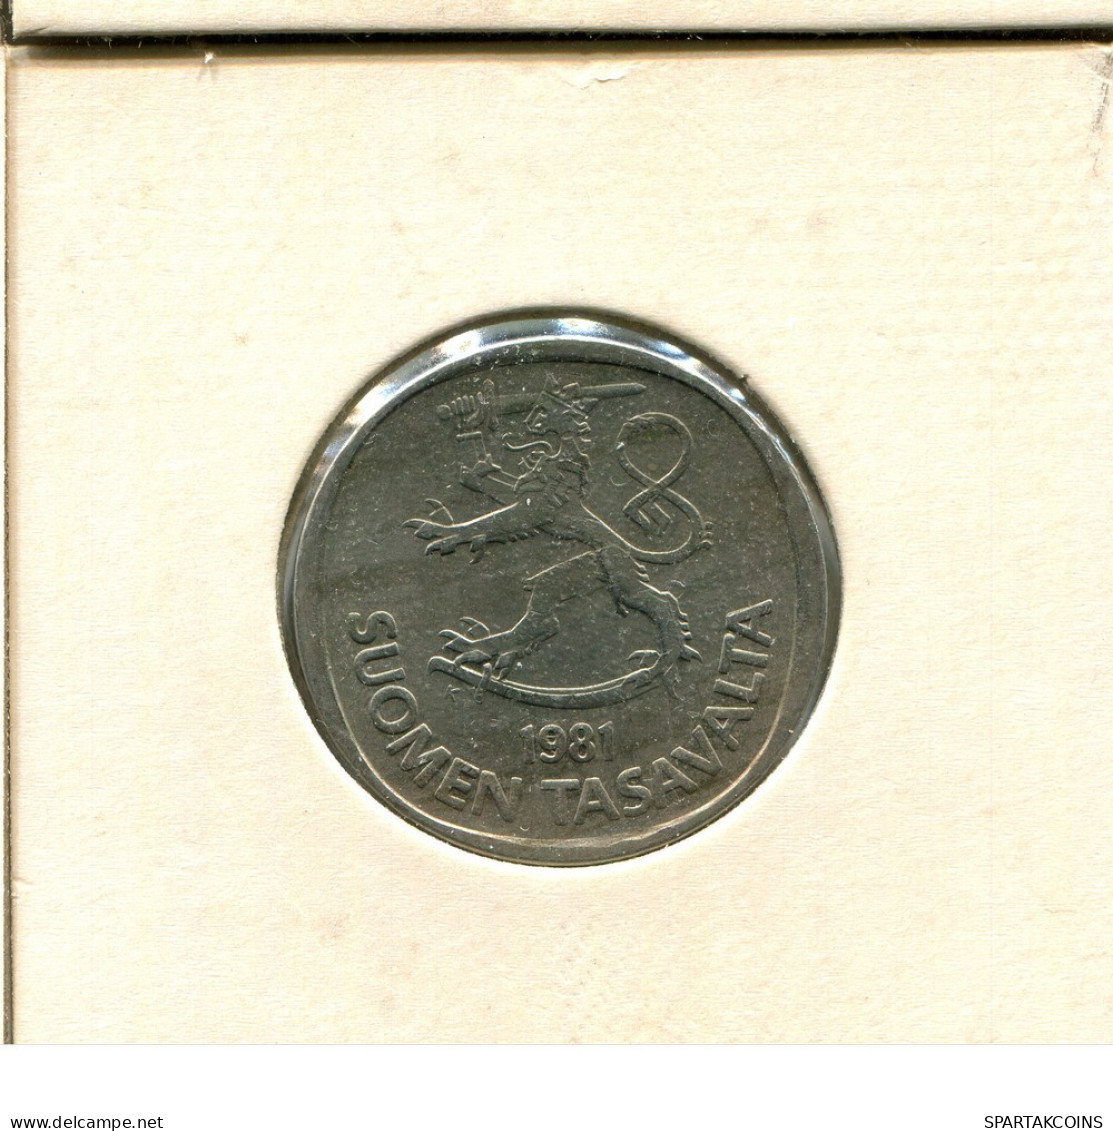 1 MARKKA 1981 FINLAND Coin #AS750.U.A - Finland